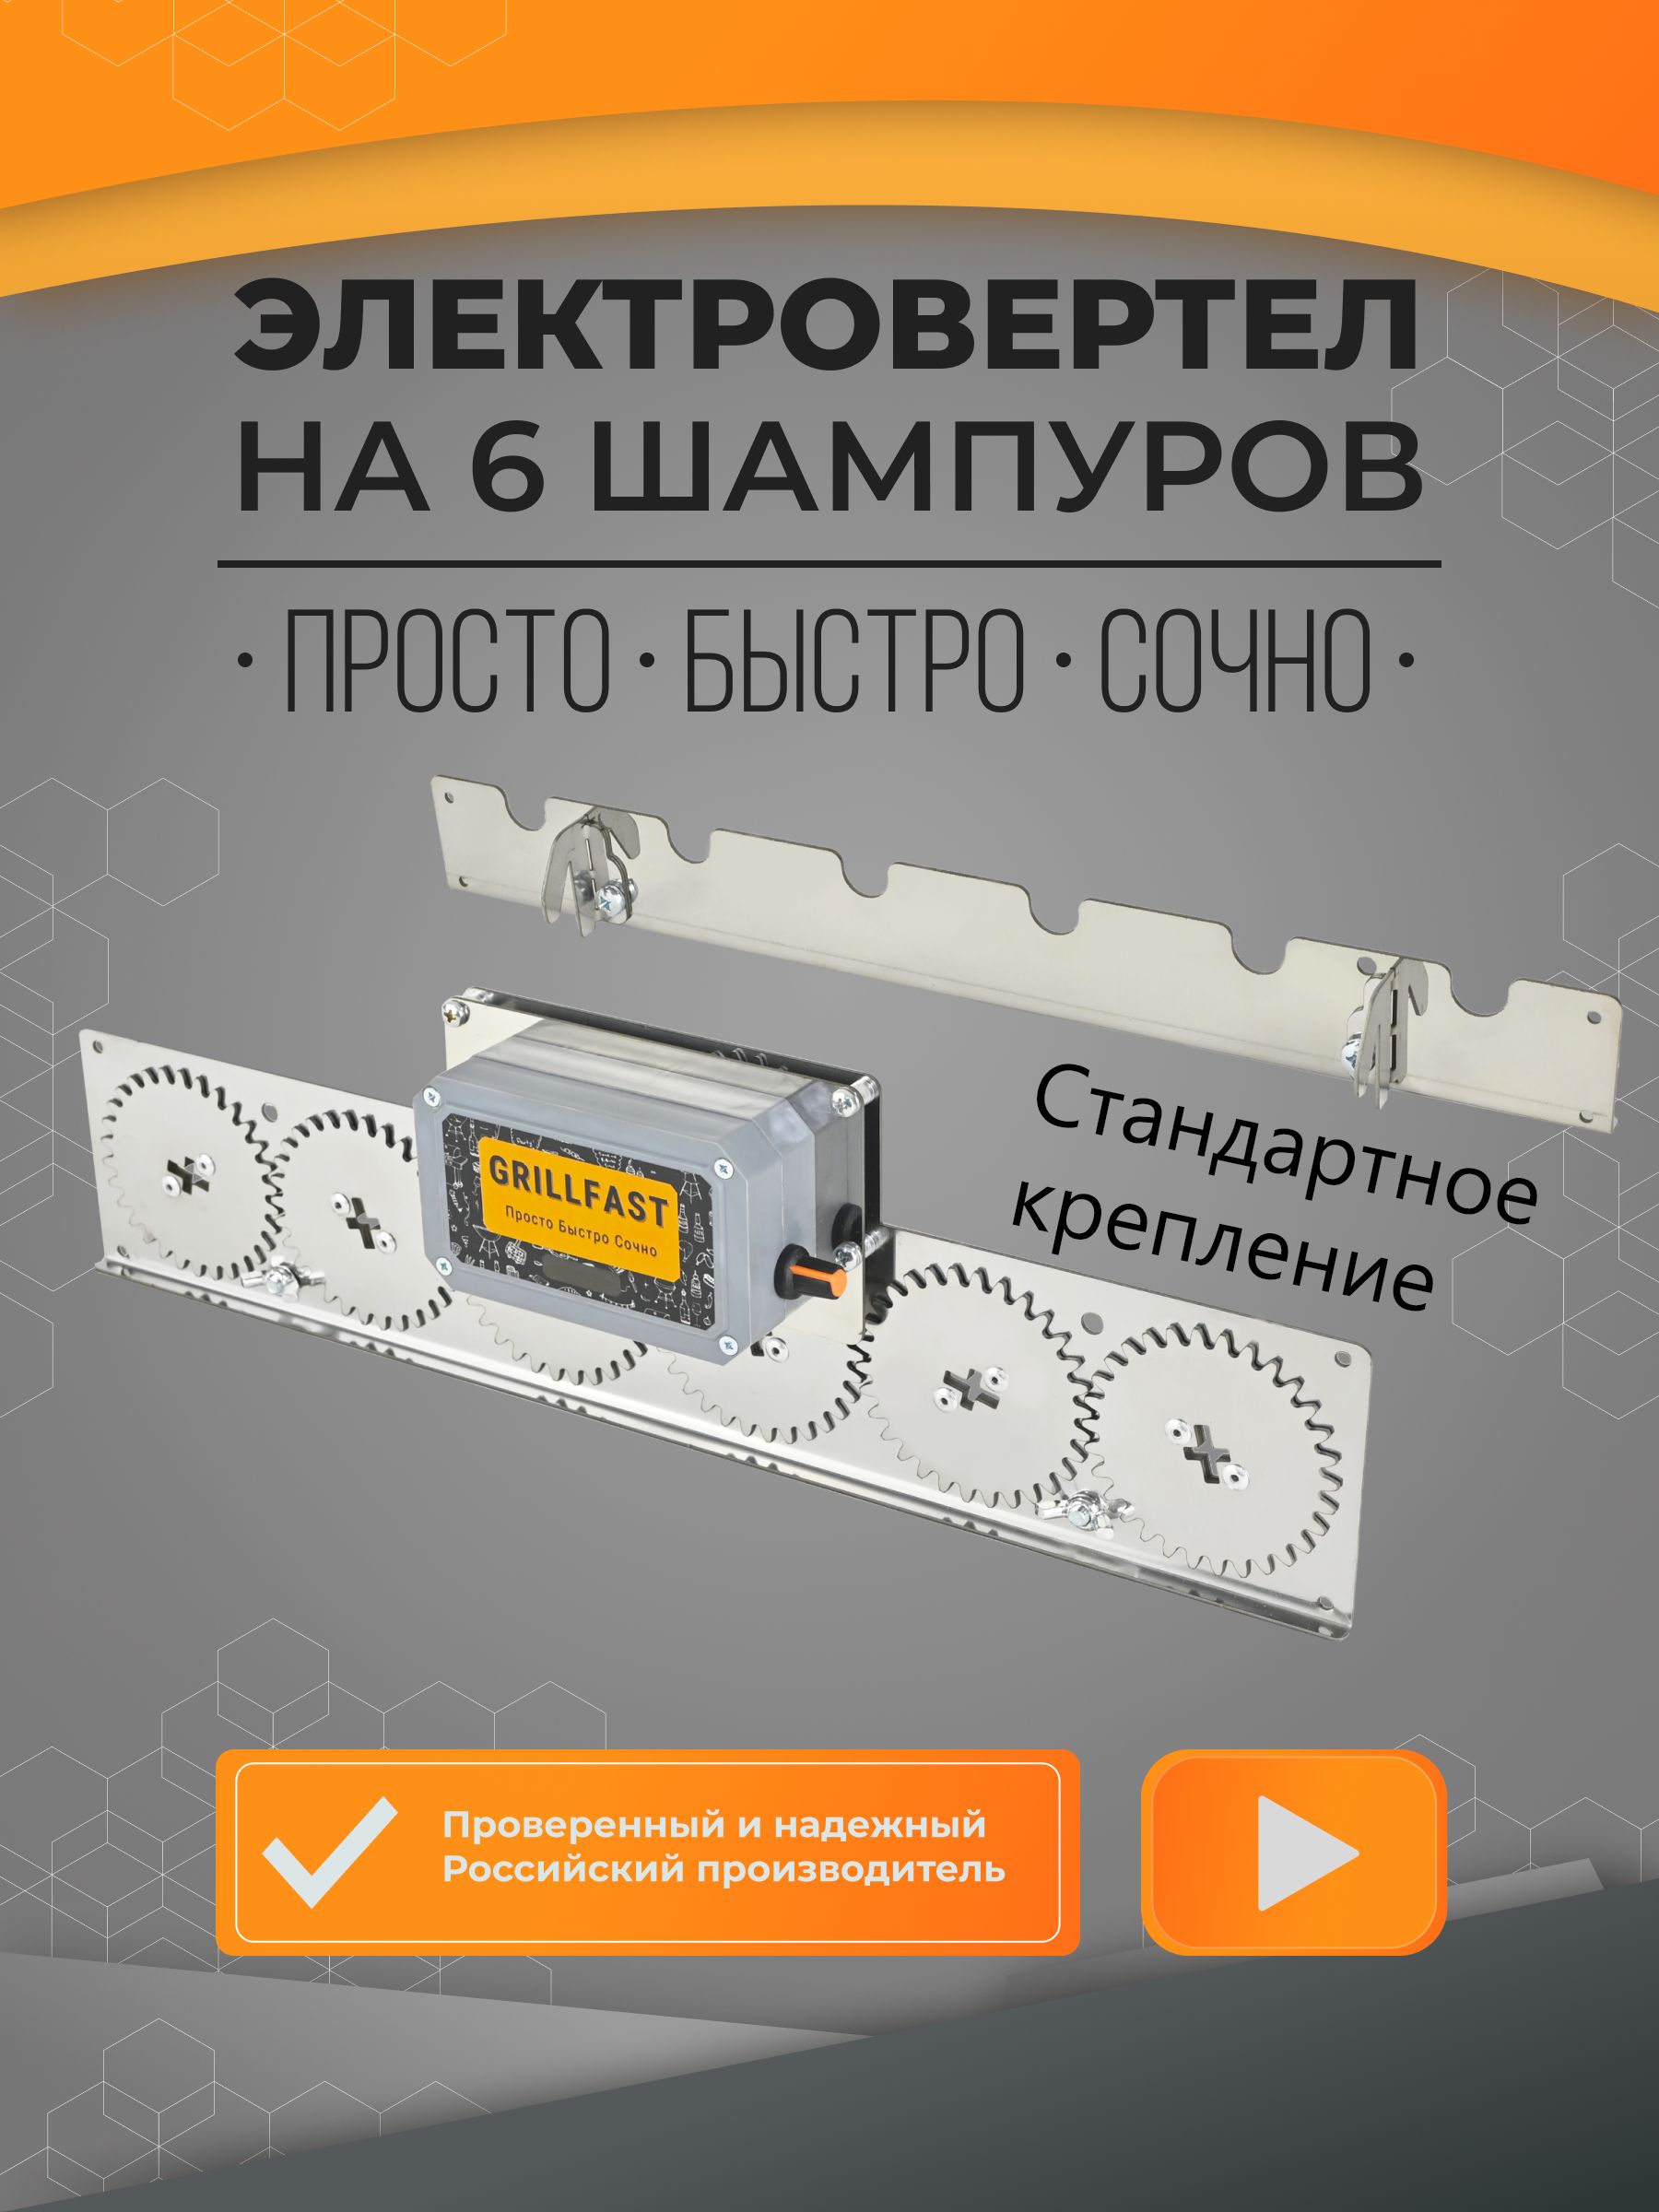 Шампура-самокруты. ШС-5 USB Электропривод для мангалов Вертел. Ленивый шашлычник | AliExpress